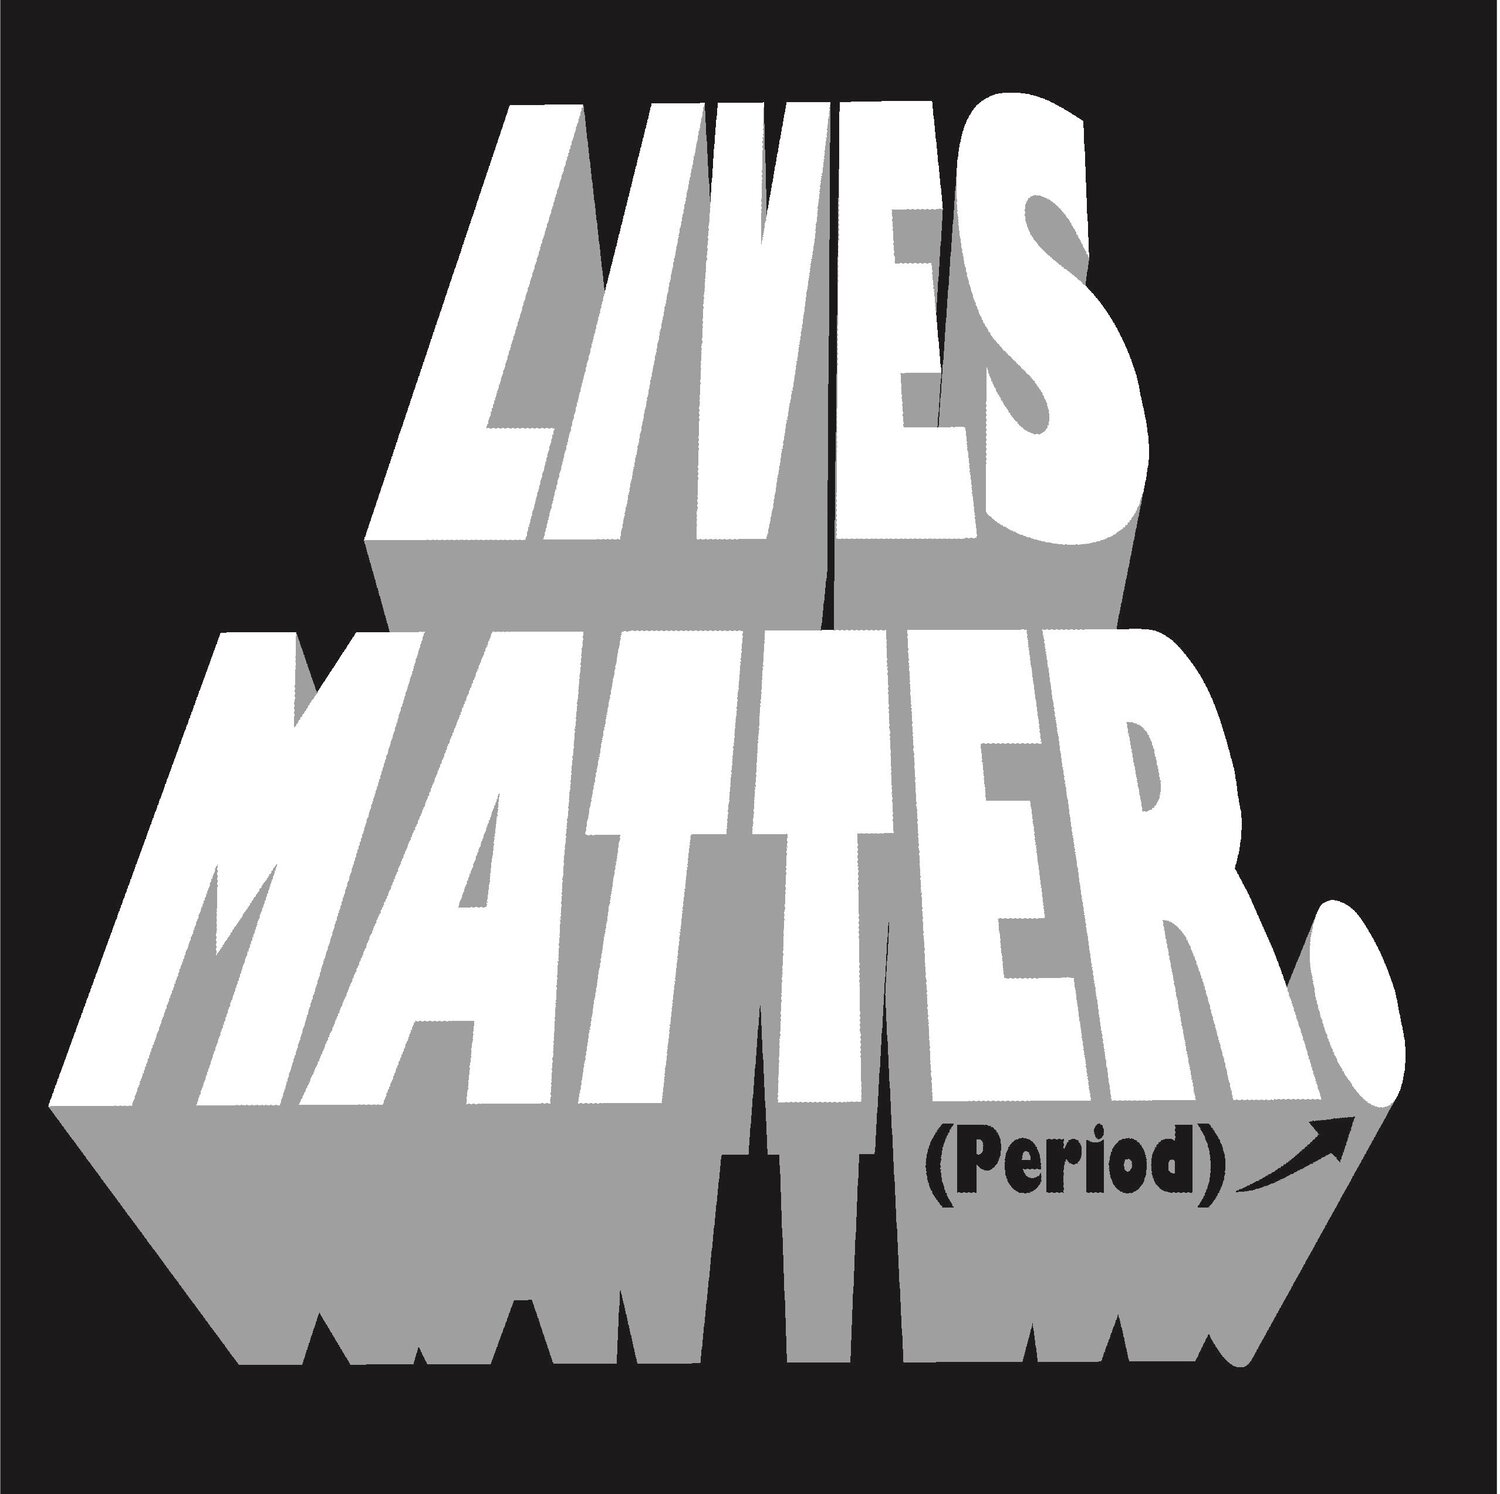 Lives Matter Period